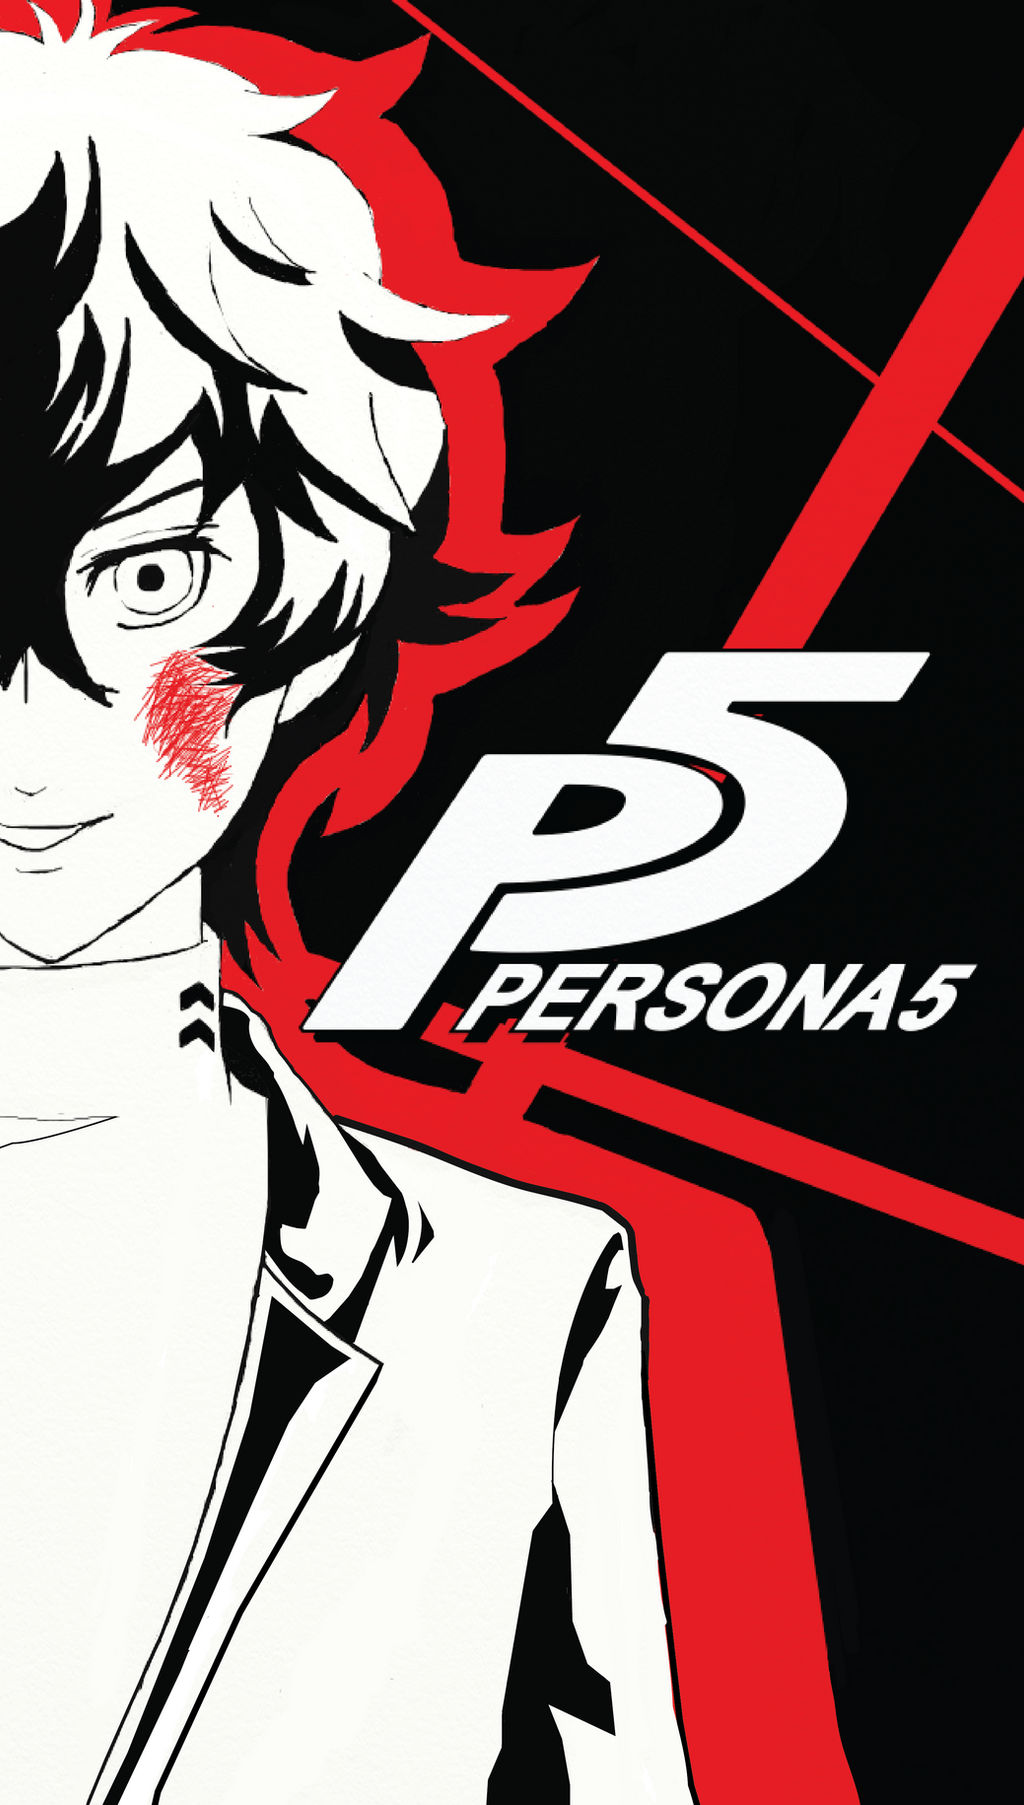 Được thiết kế bởi destructorkhan trên DeviantArt, hình nền iPhone Persona 5 sẽ khiến bạn cảm thấy hưng phấn và muốn đạt được những điều tuyệt vời như nhân vật trong game. Hãy tải ngay về điện thoại của bạn để trở thành một phần của thế giới Persona 5!